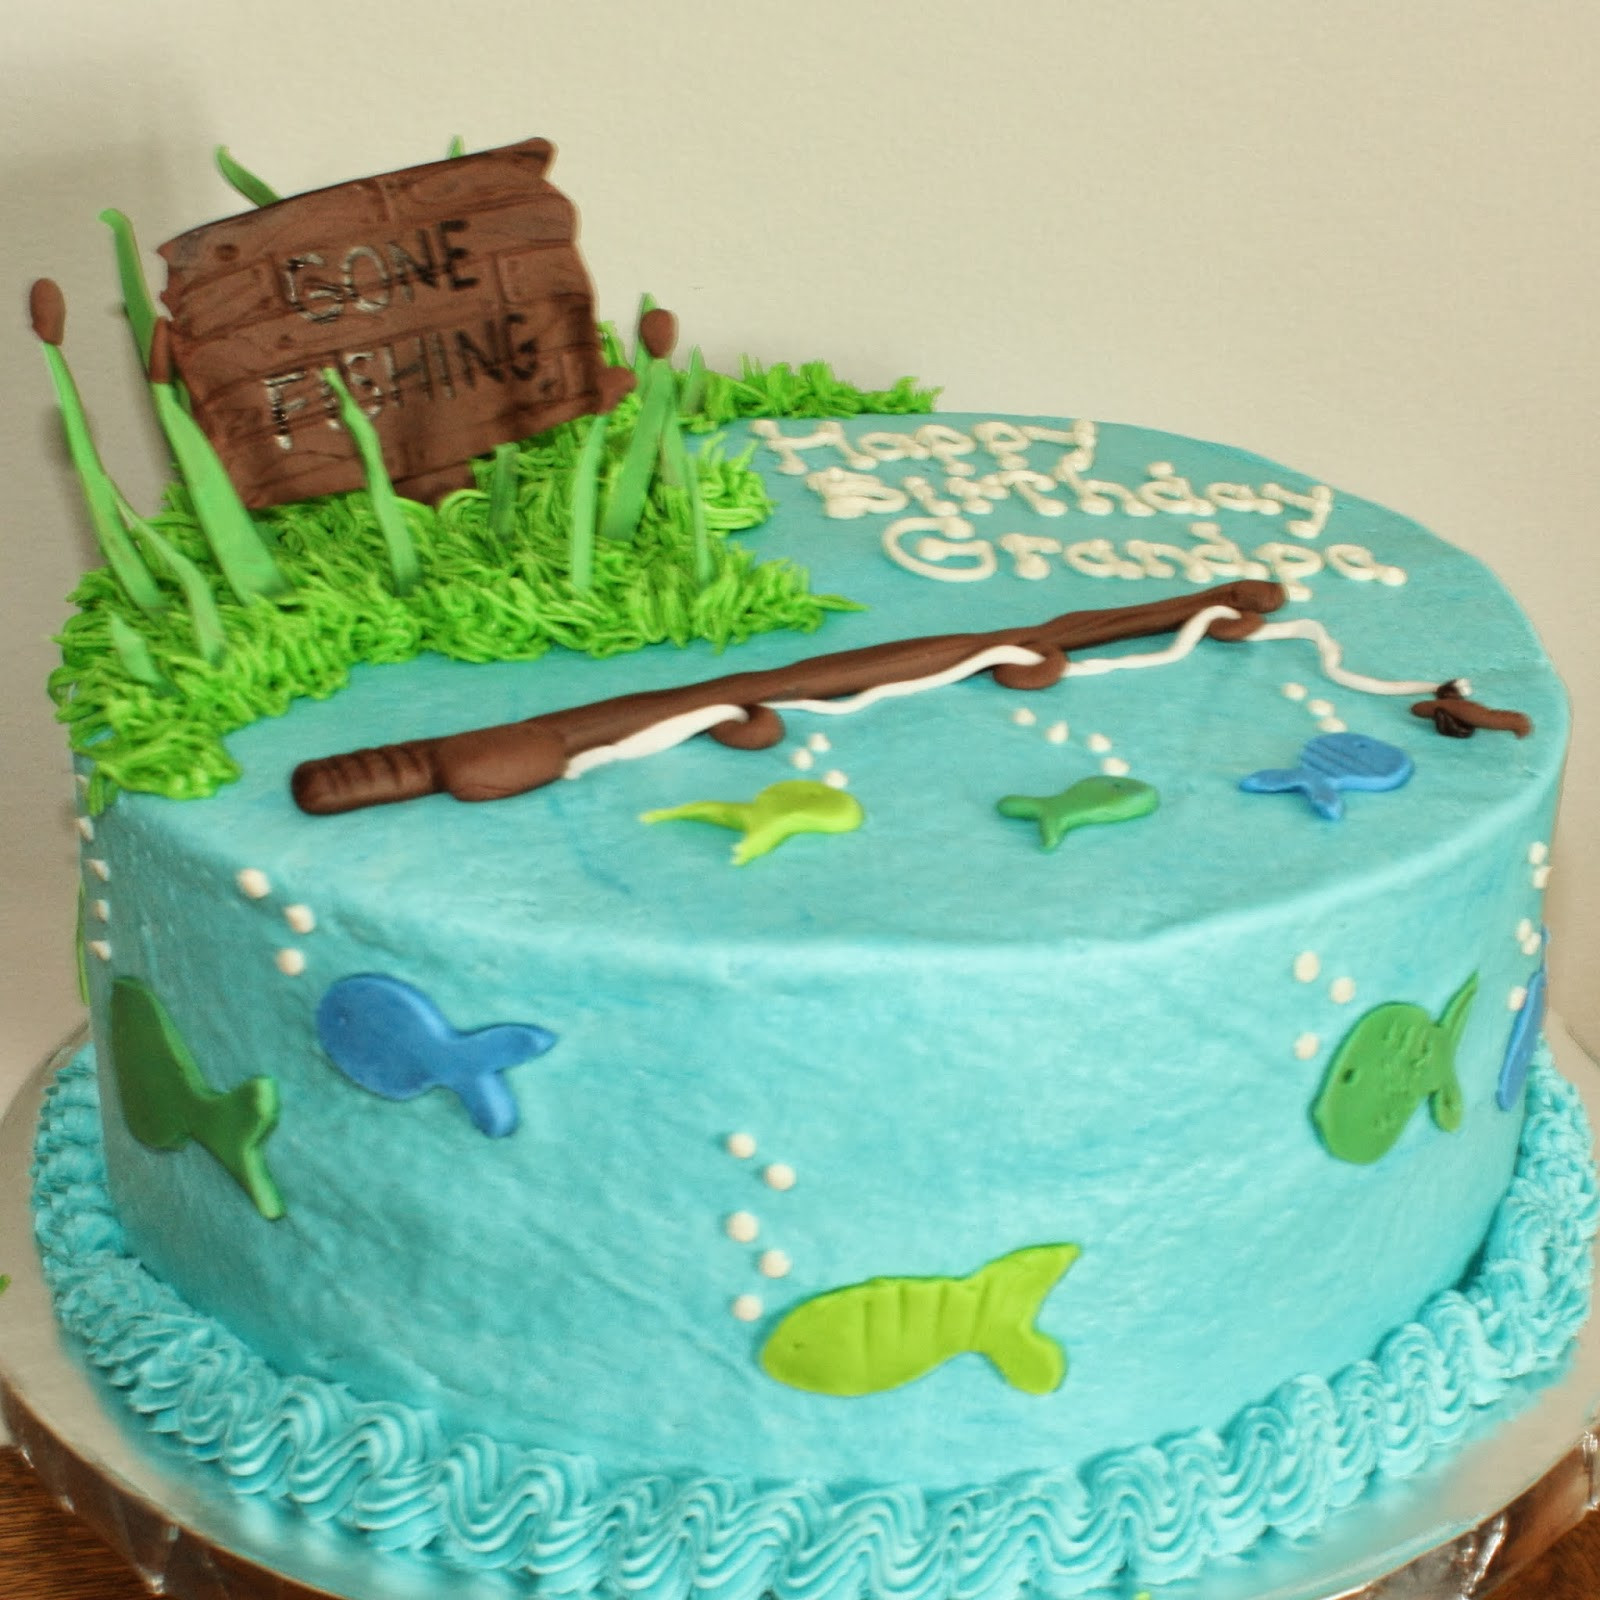 Fishing Birthday Cake Ideas
 Kake Gone Fishing Cake